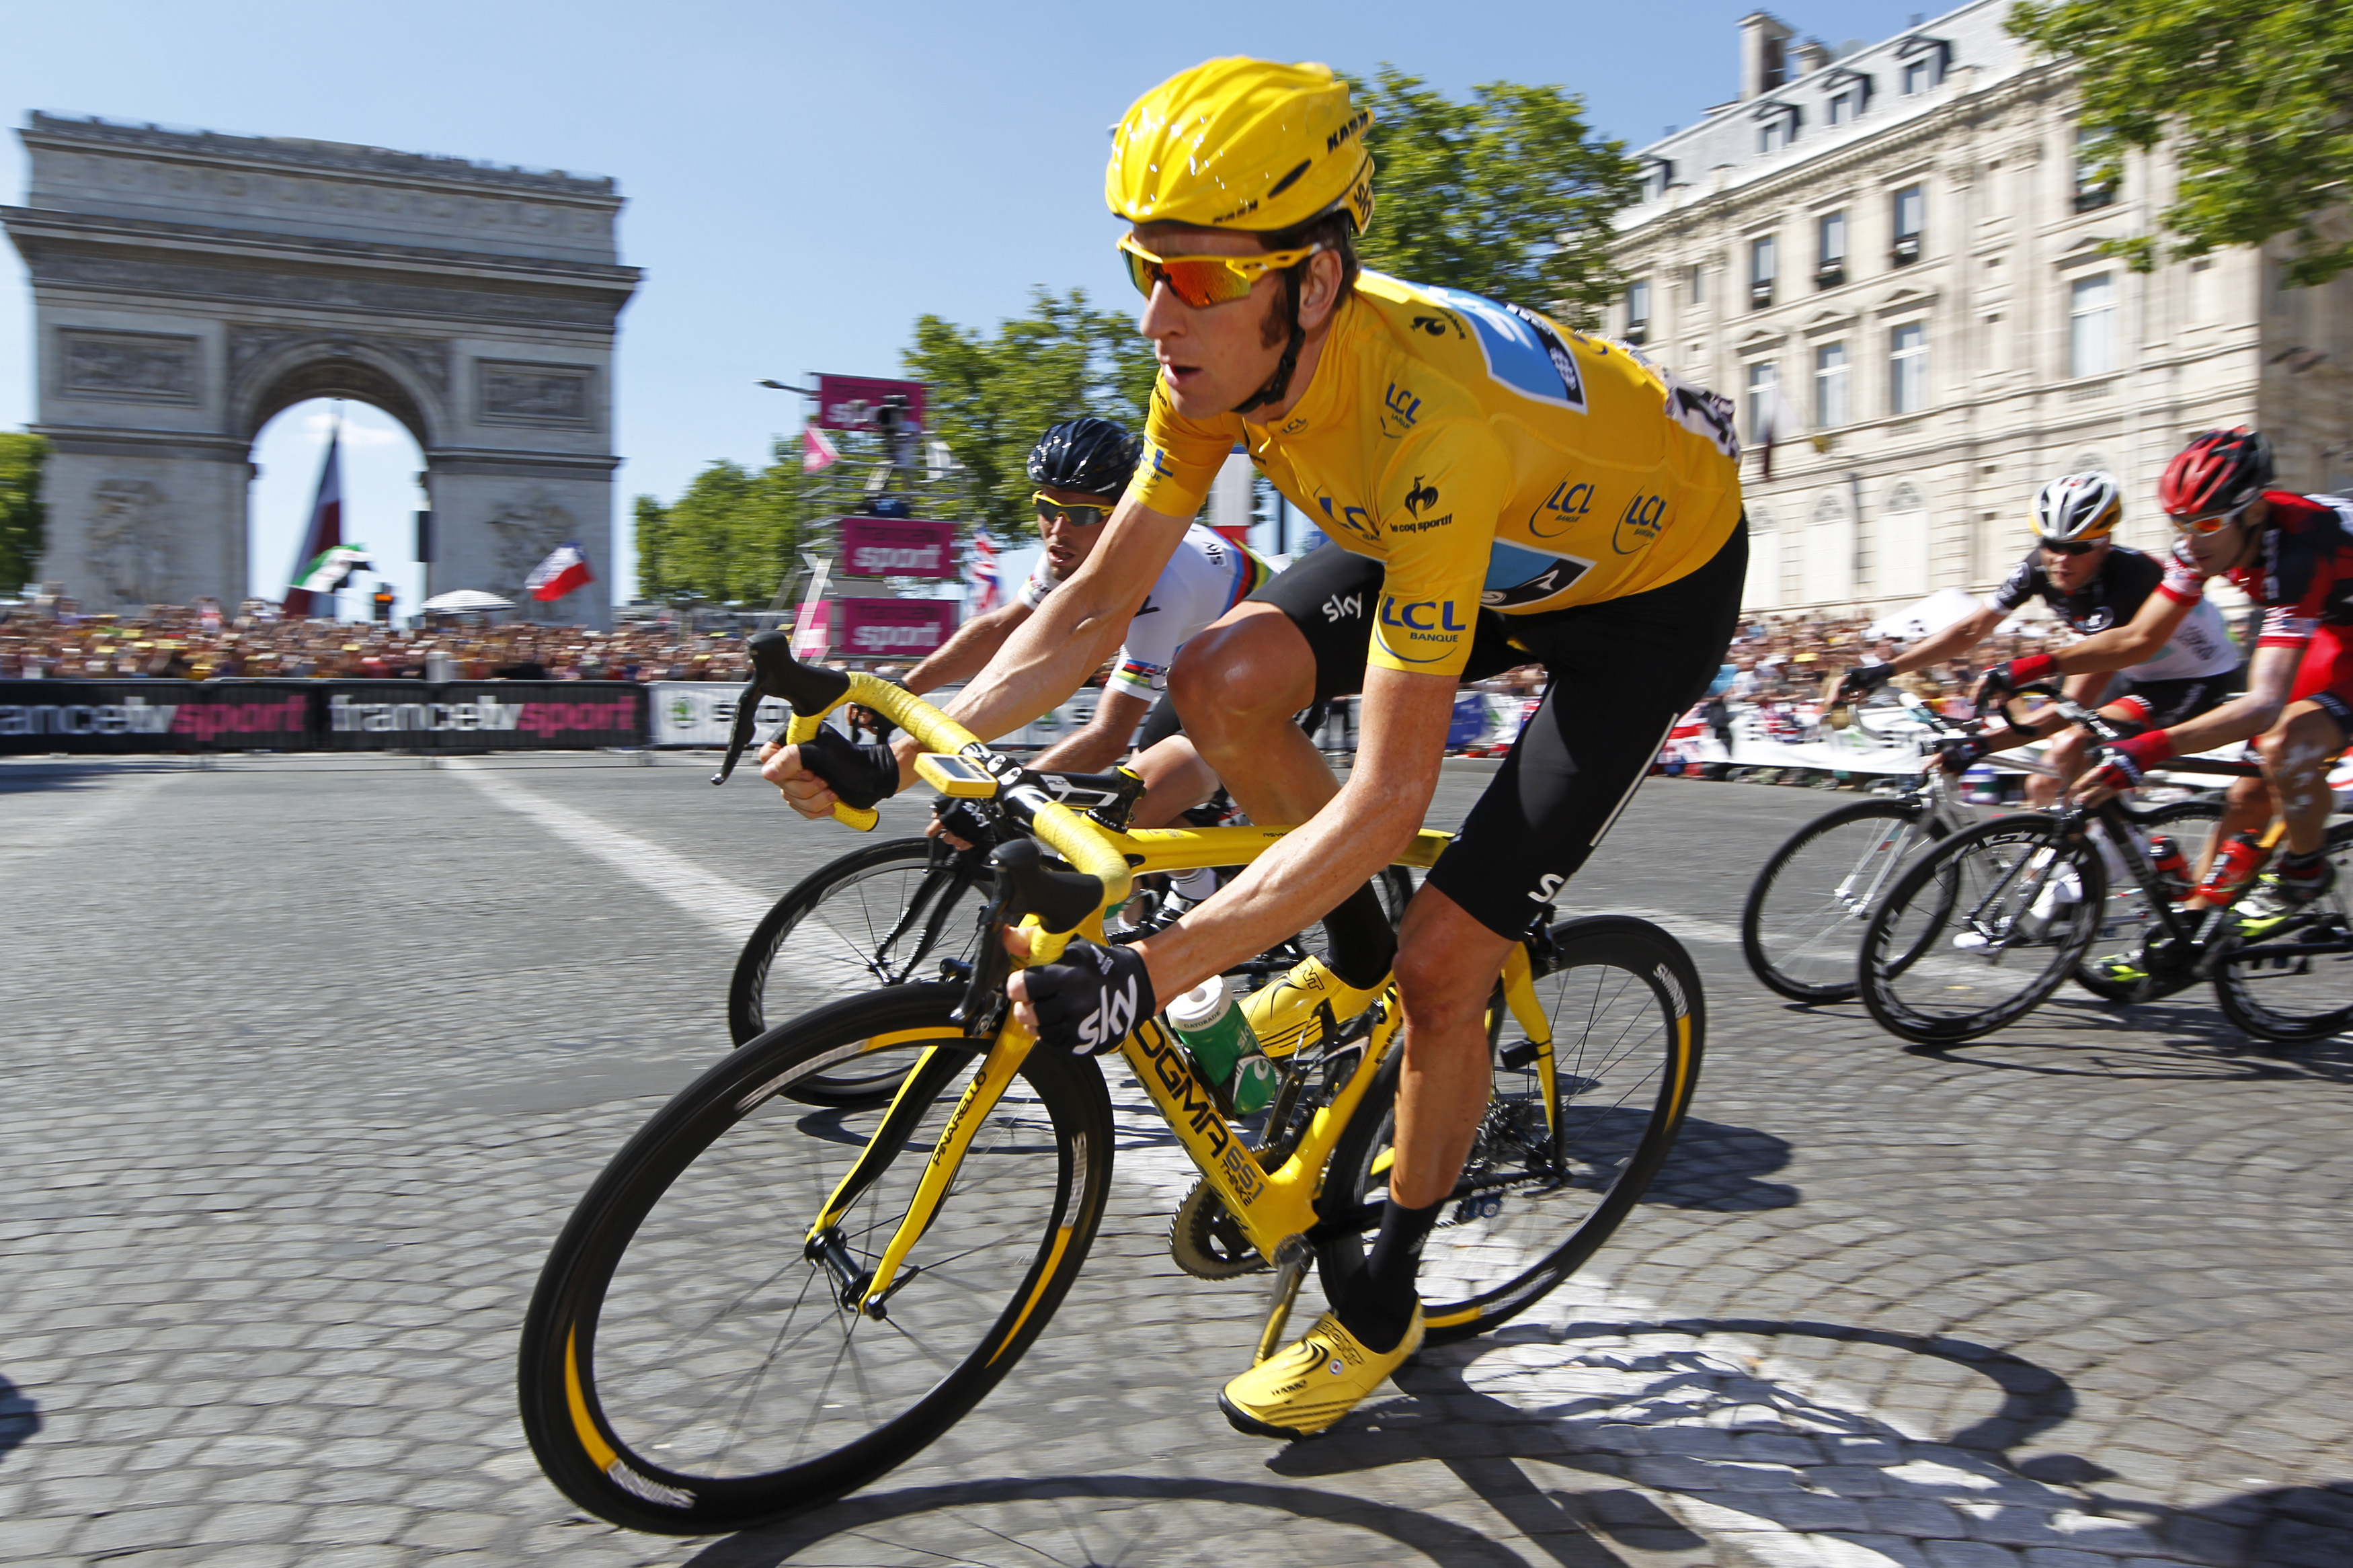 Les parcours du Tour de France (Cyclisme) pour l’année 2015